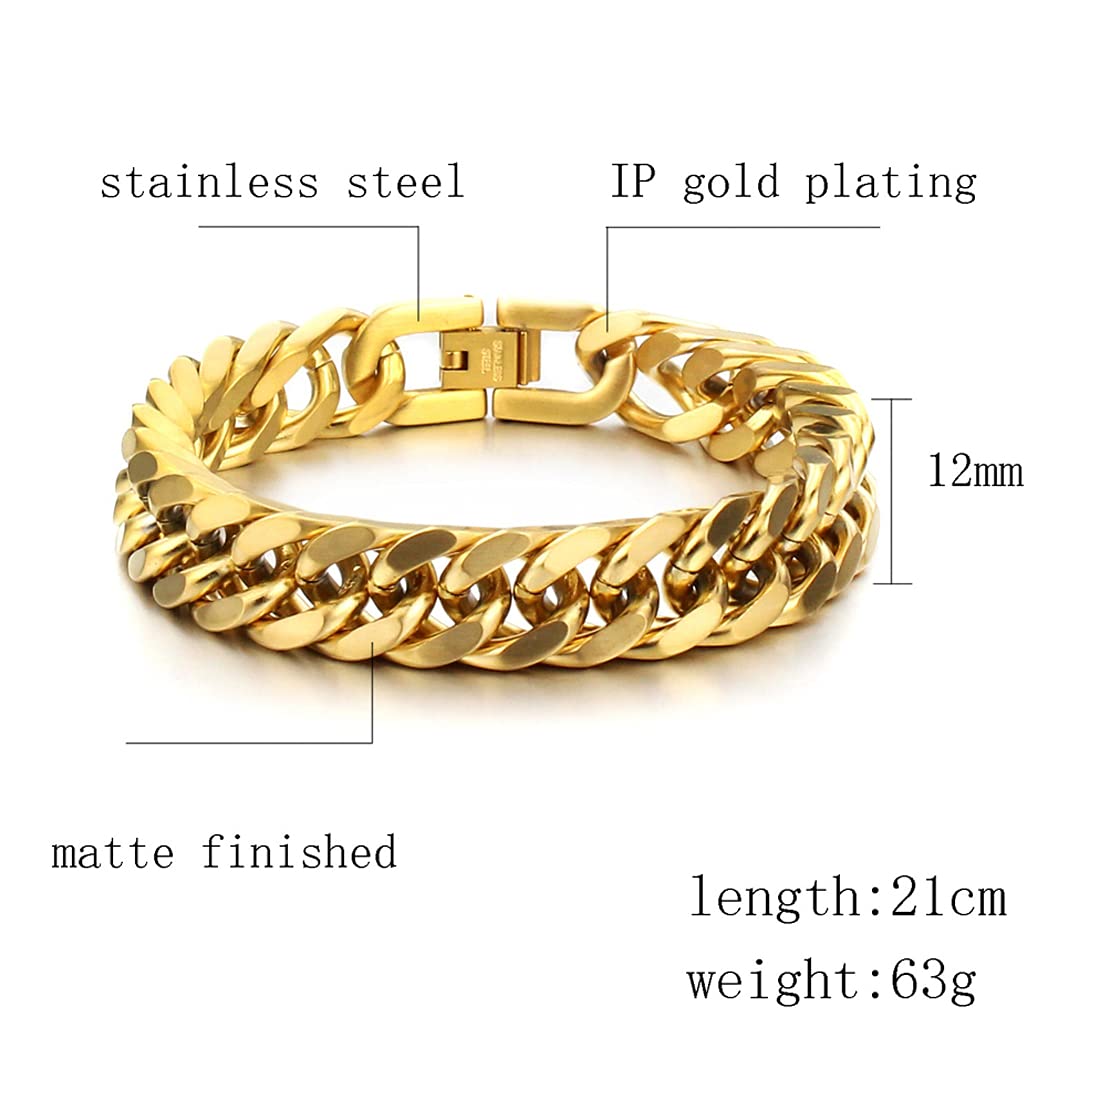 10k Gold Nugget Vintage Link Classic Bracelet Gift for Men Women | eBay